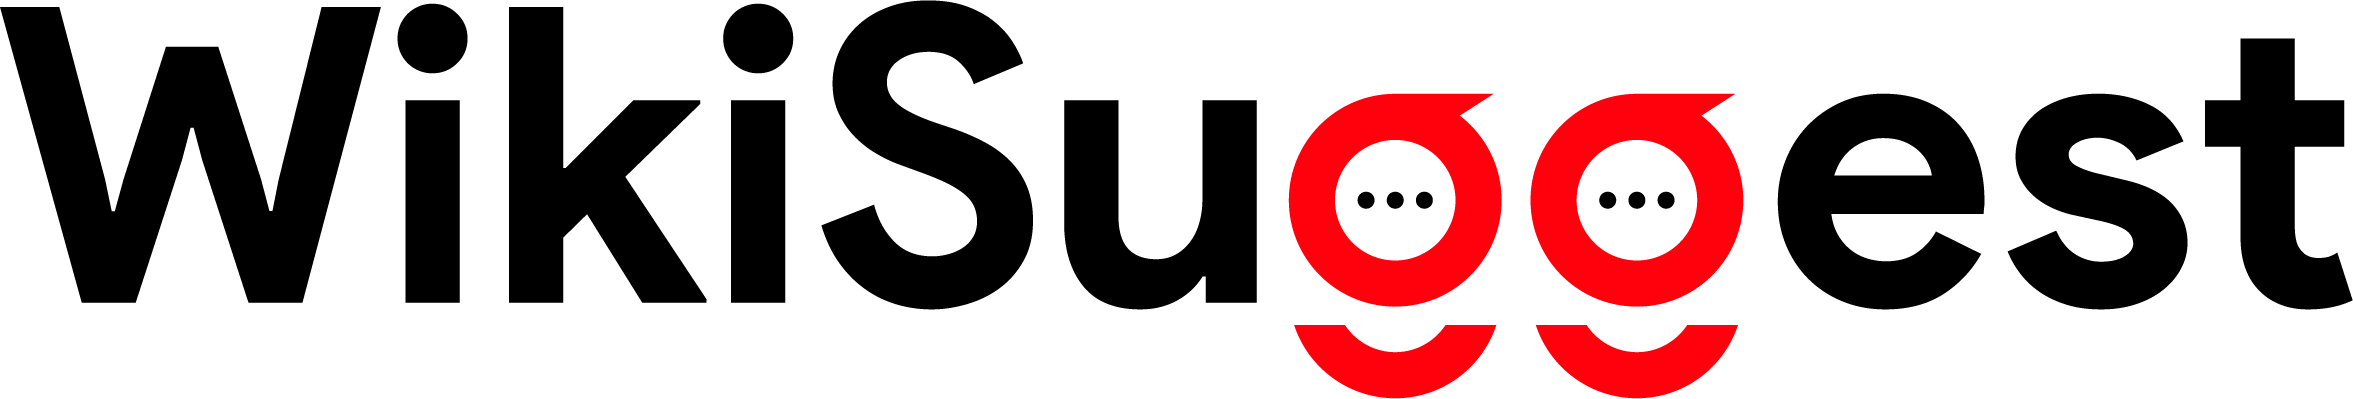 Wiki Suggest logo